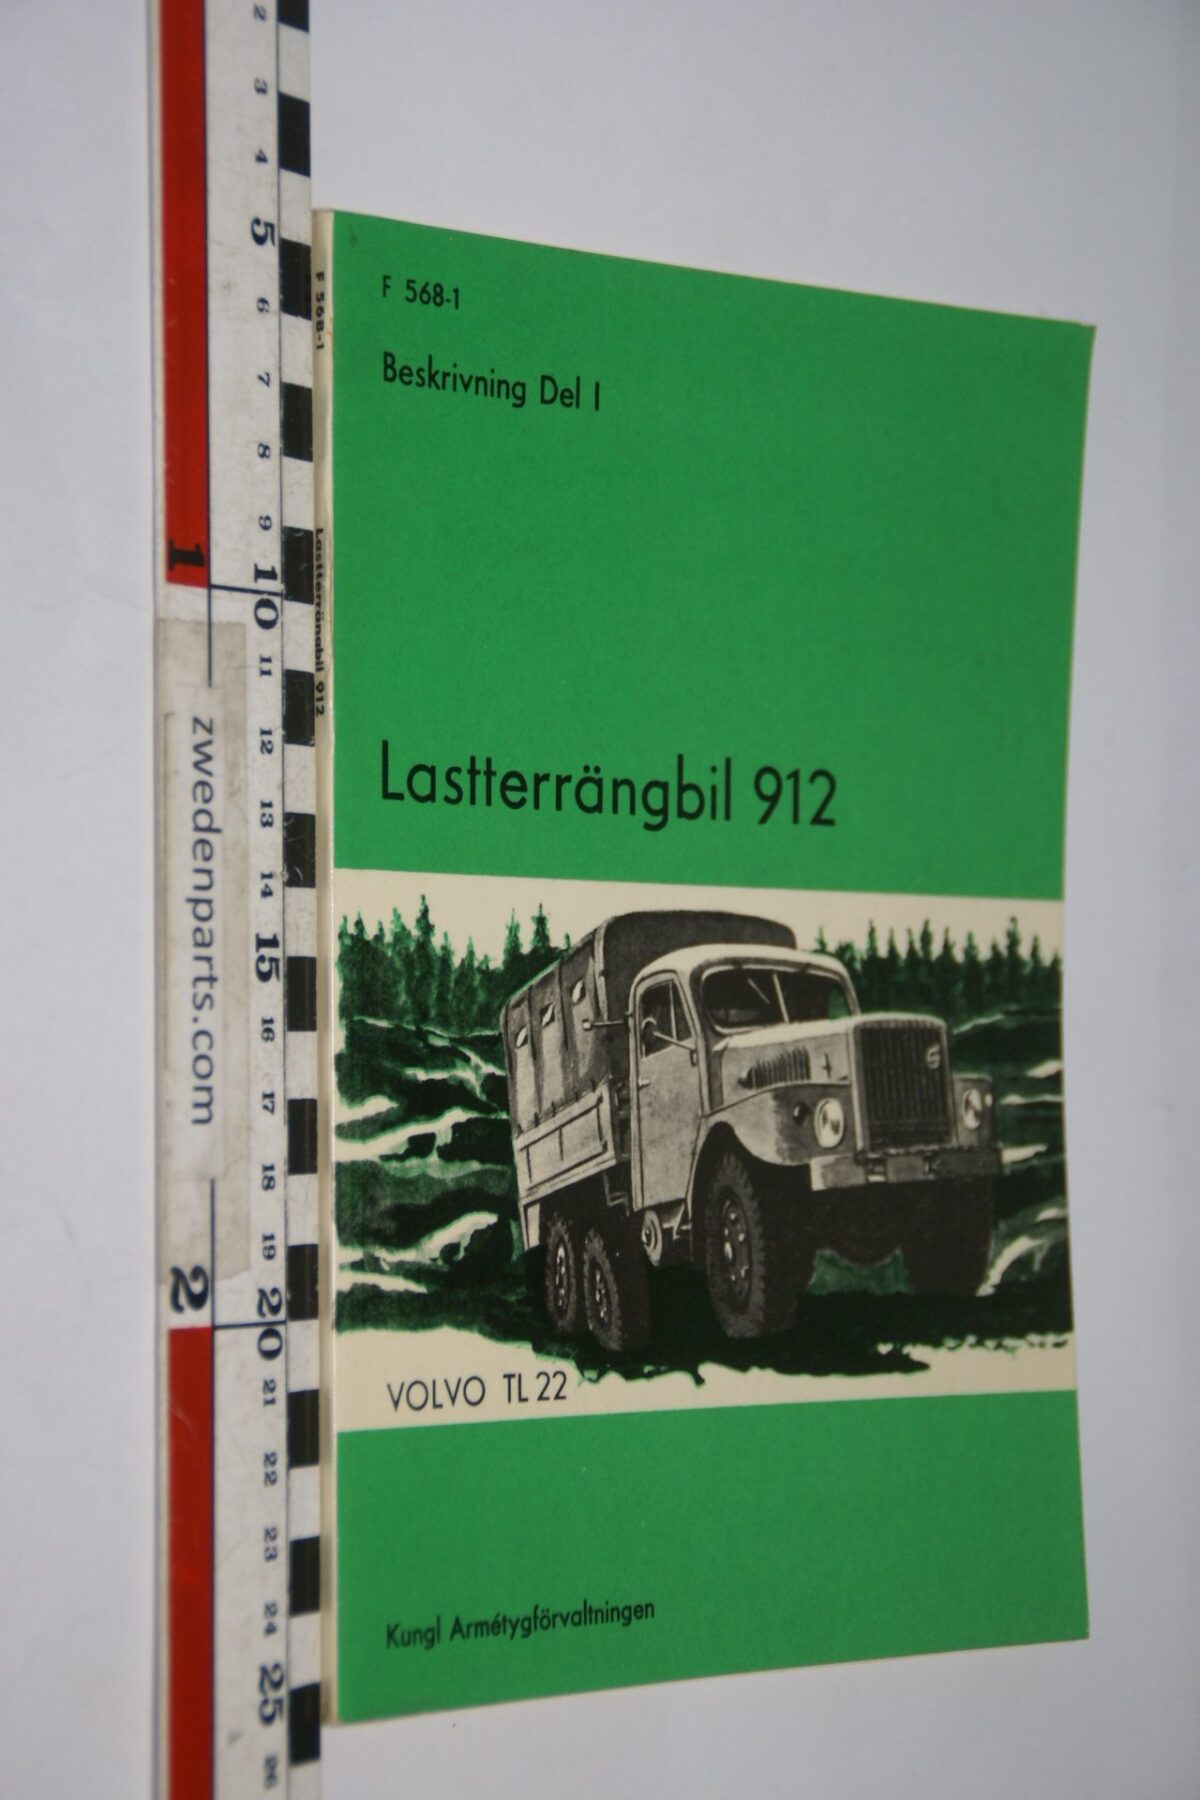 DSC07199 1967 origineel Volvo Lastterrangbil 912 TL22 instruktionsbok 1 van 2.000 Svenskt SS 1152-1, F568-1